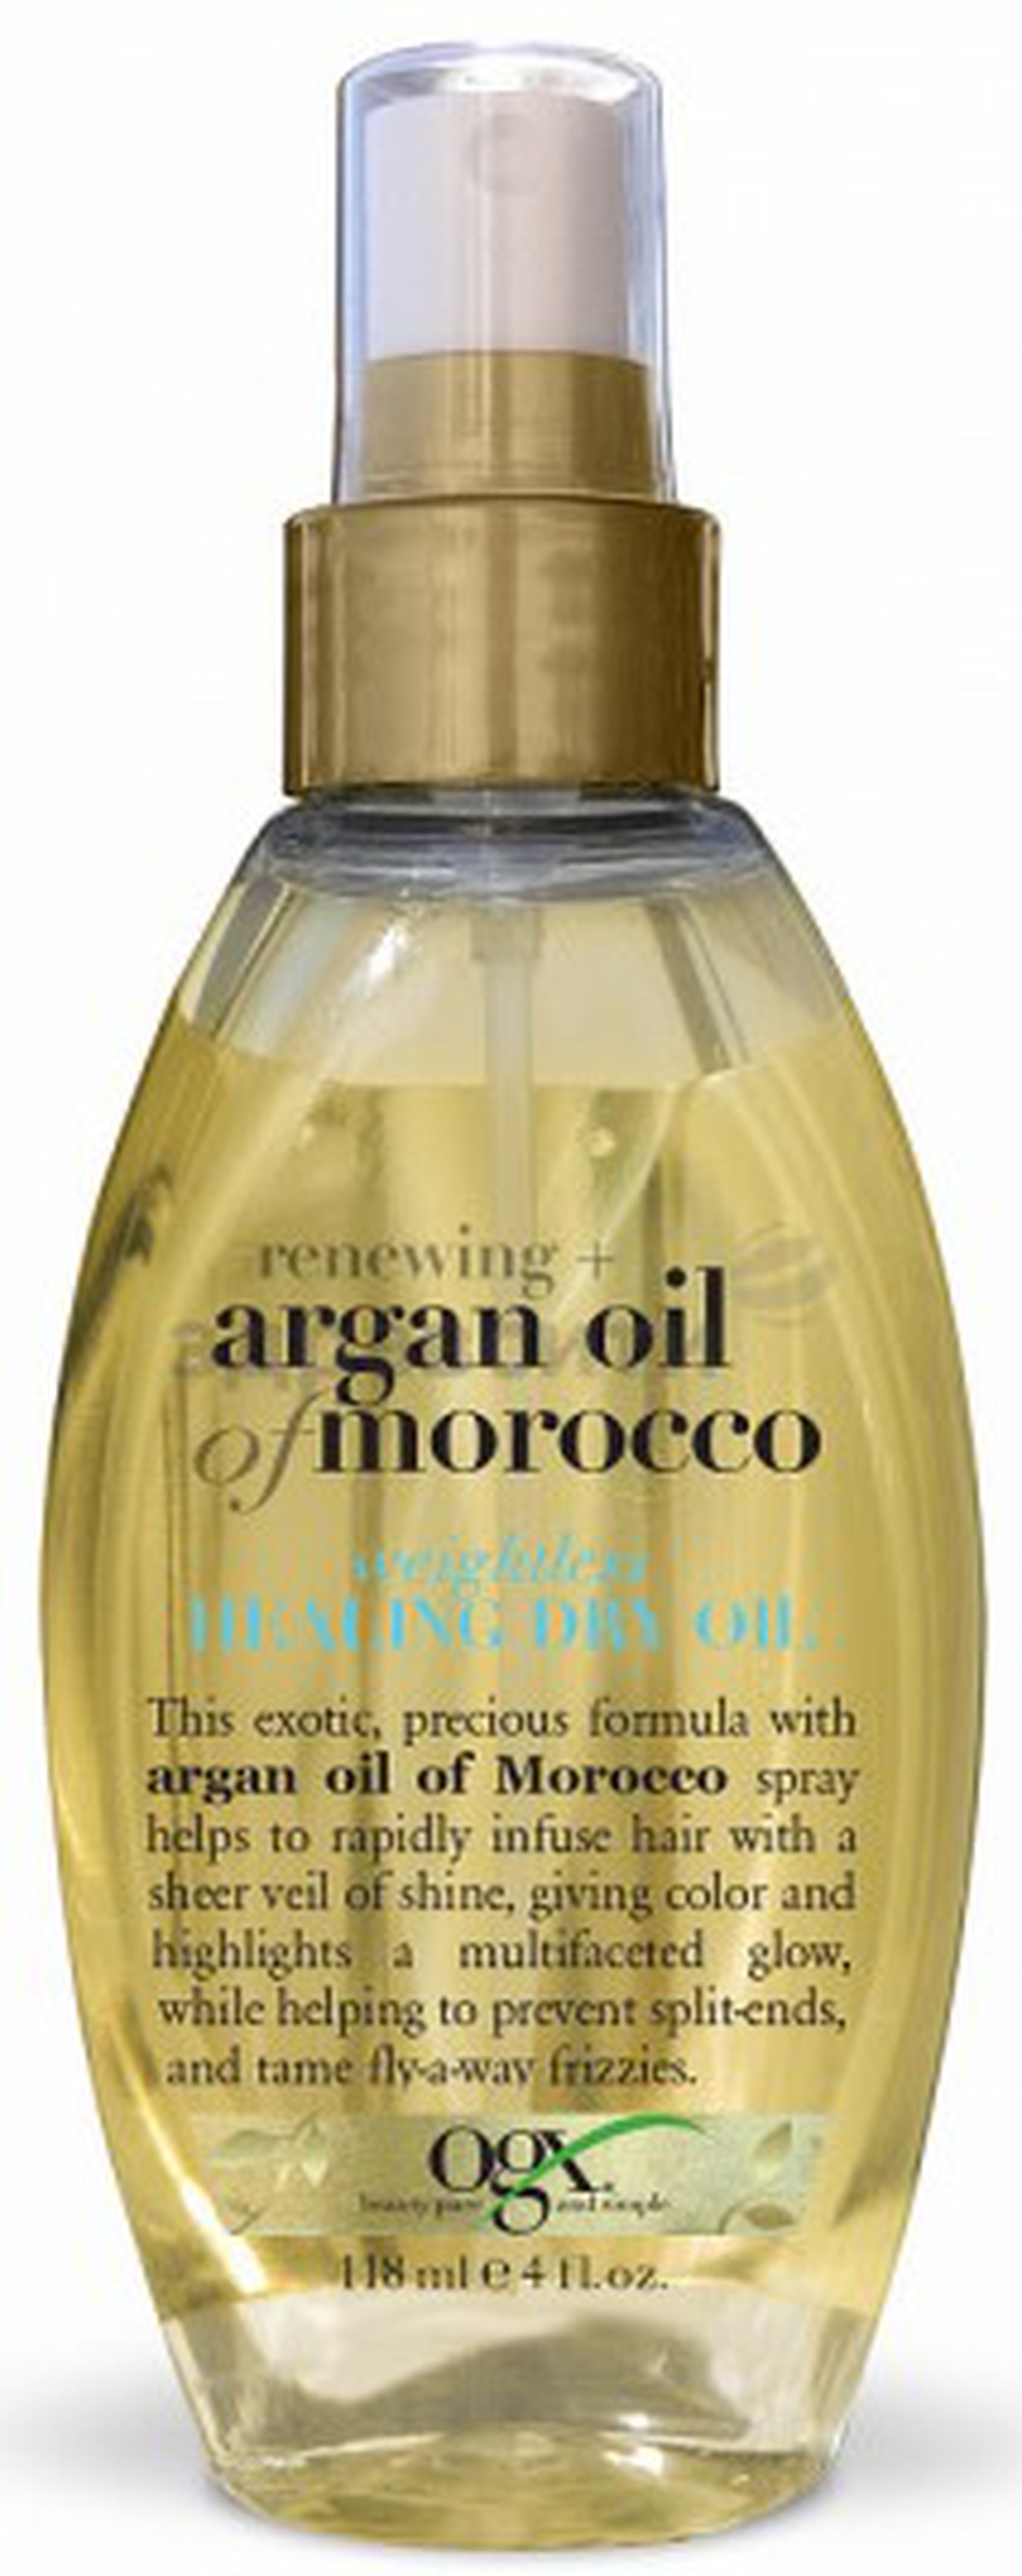 OGX Масло-спрей легкое сухое аргановое Марокко для восстановления волос 118 мл фото